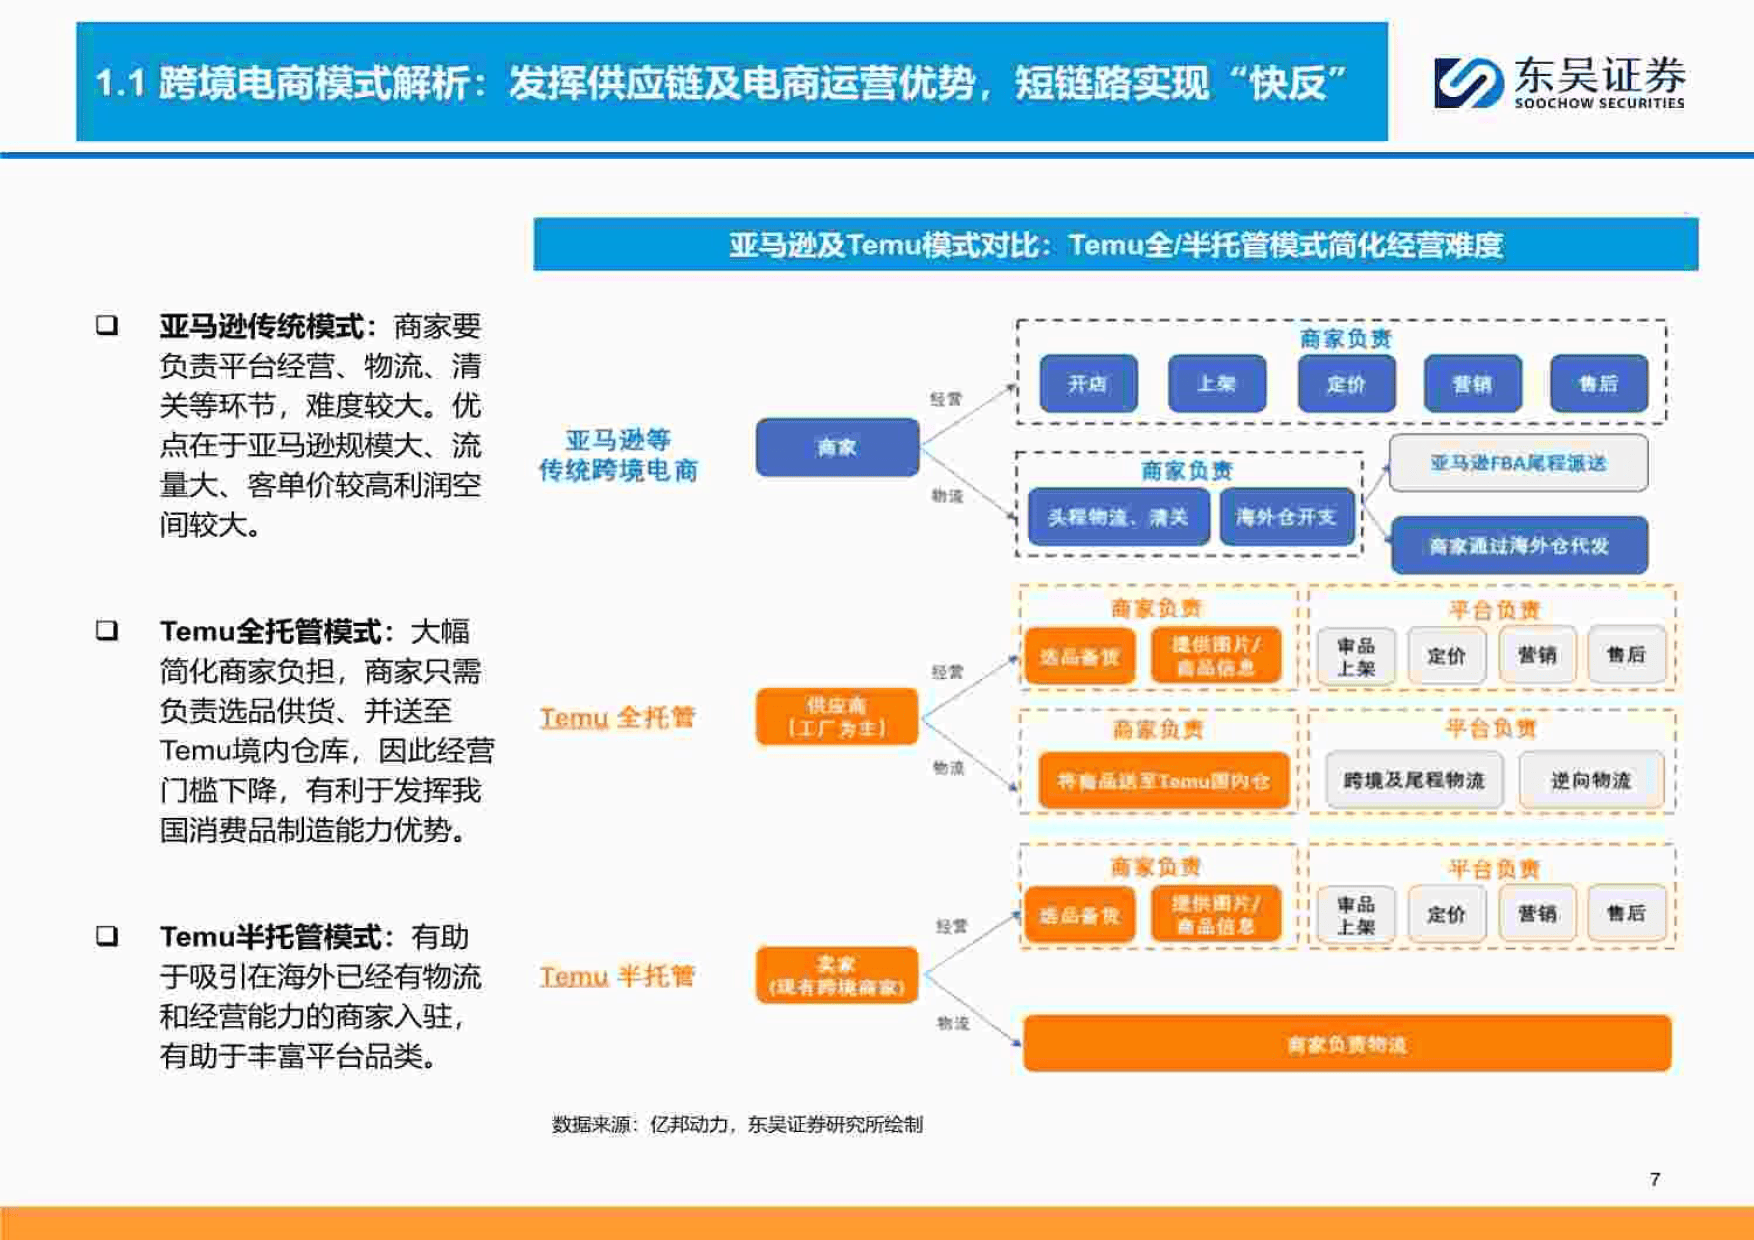 商贸零售行业深度跨境电商全产业链图谱让中国制造走向全球的企业们